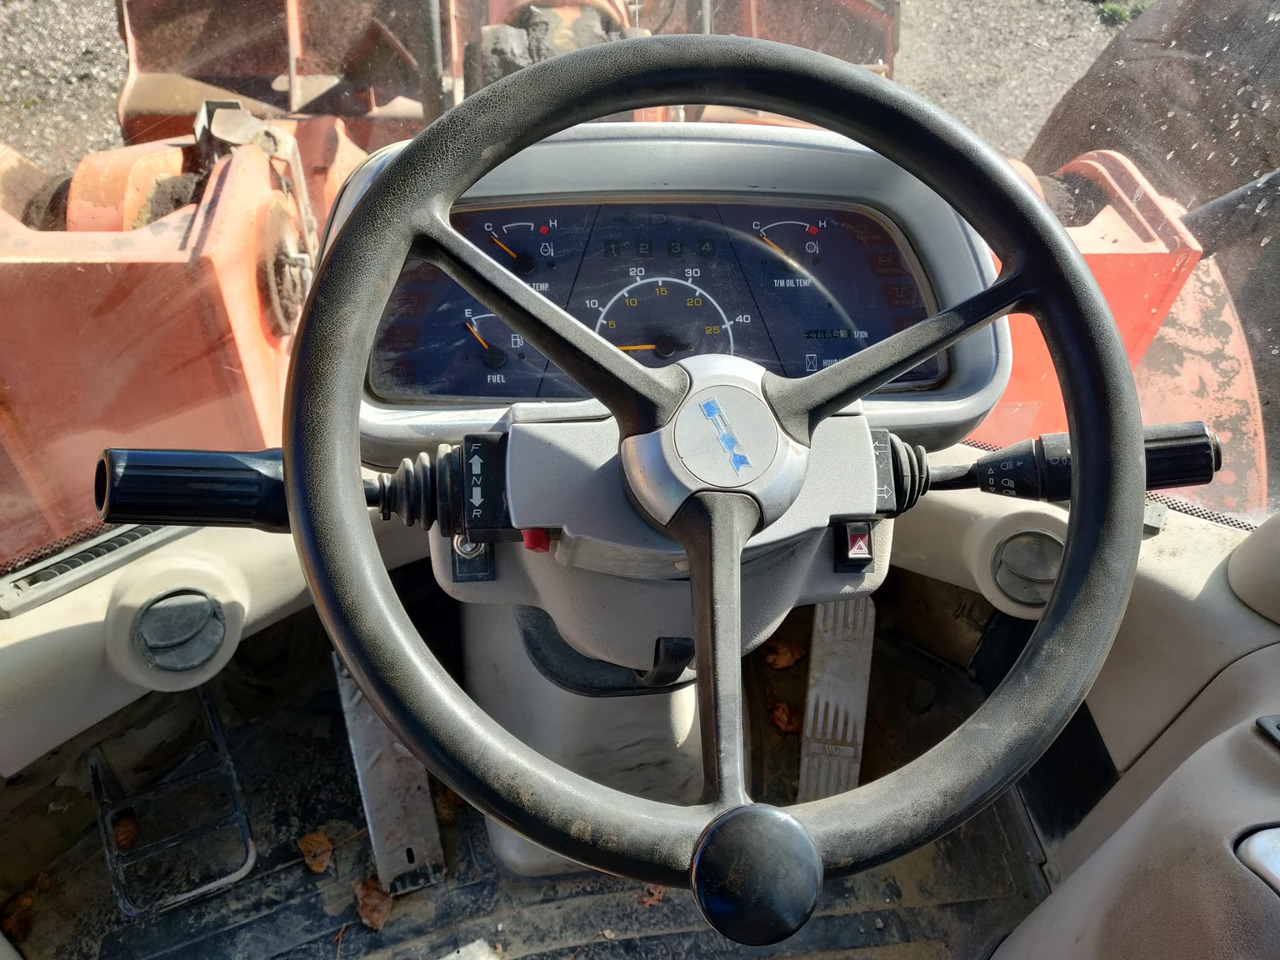 Wheel loader FIAT KOBELCO W270